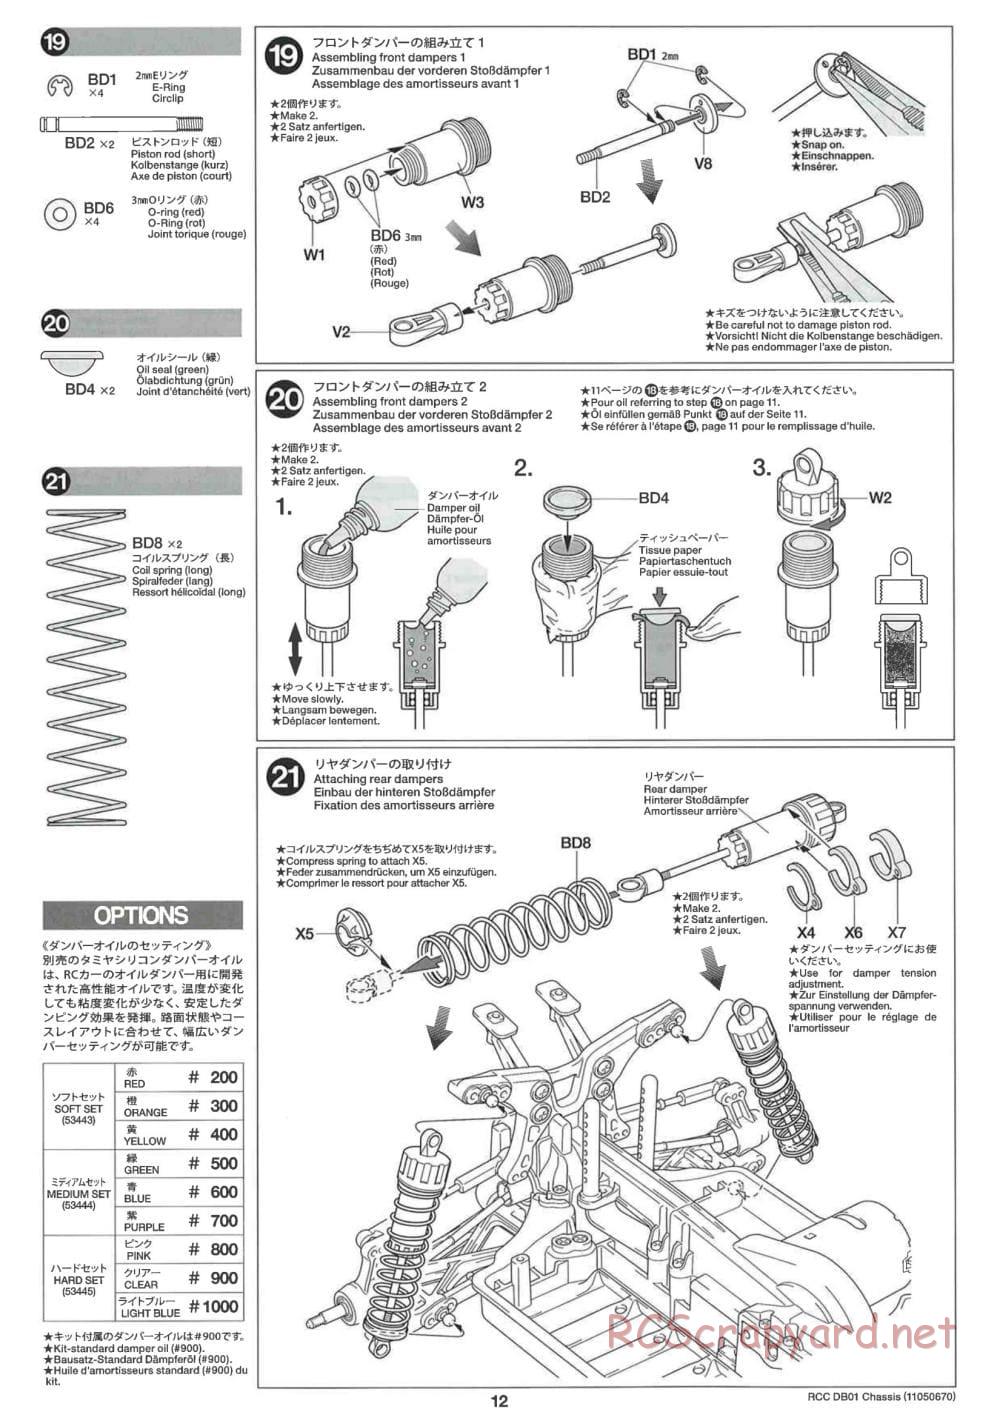 Tamiya - DB-01 Chassis - Manual - Page 12